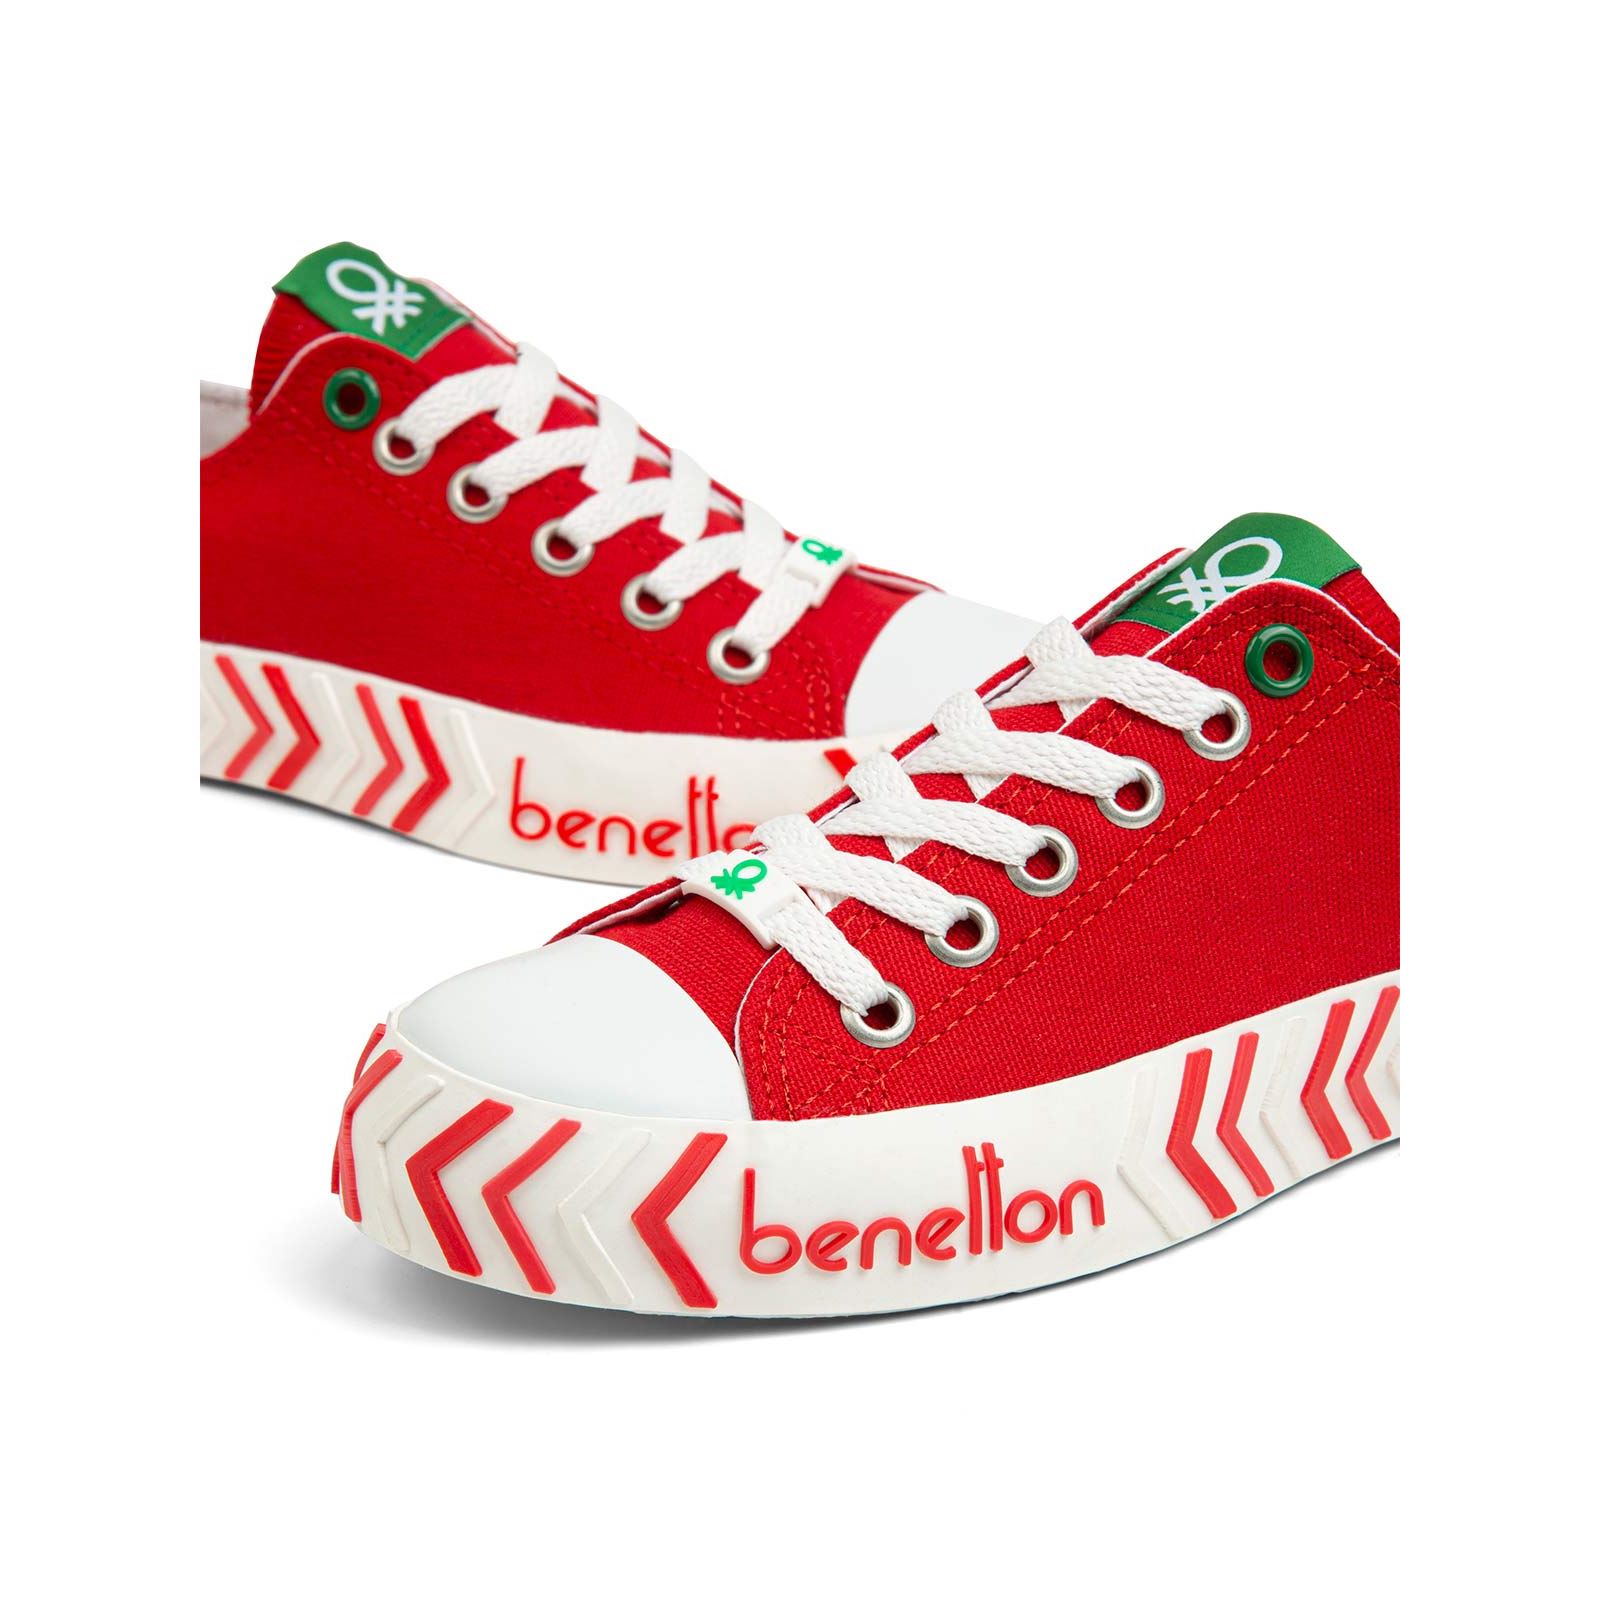 Benetton Kız Çocuk Spor Ayakkabı 31-35 Numara Kırmızı